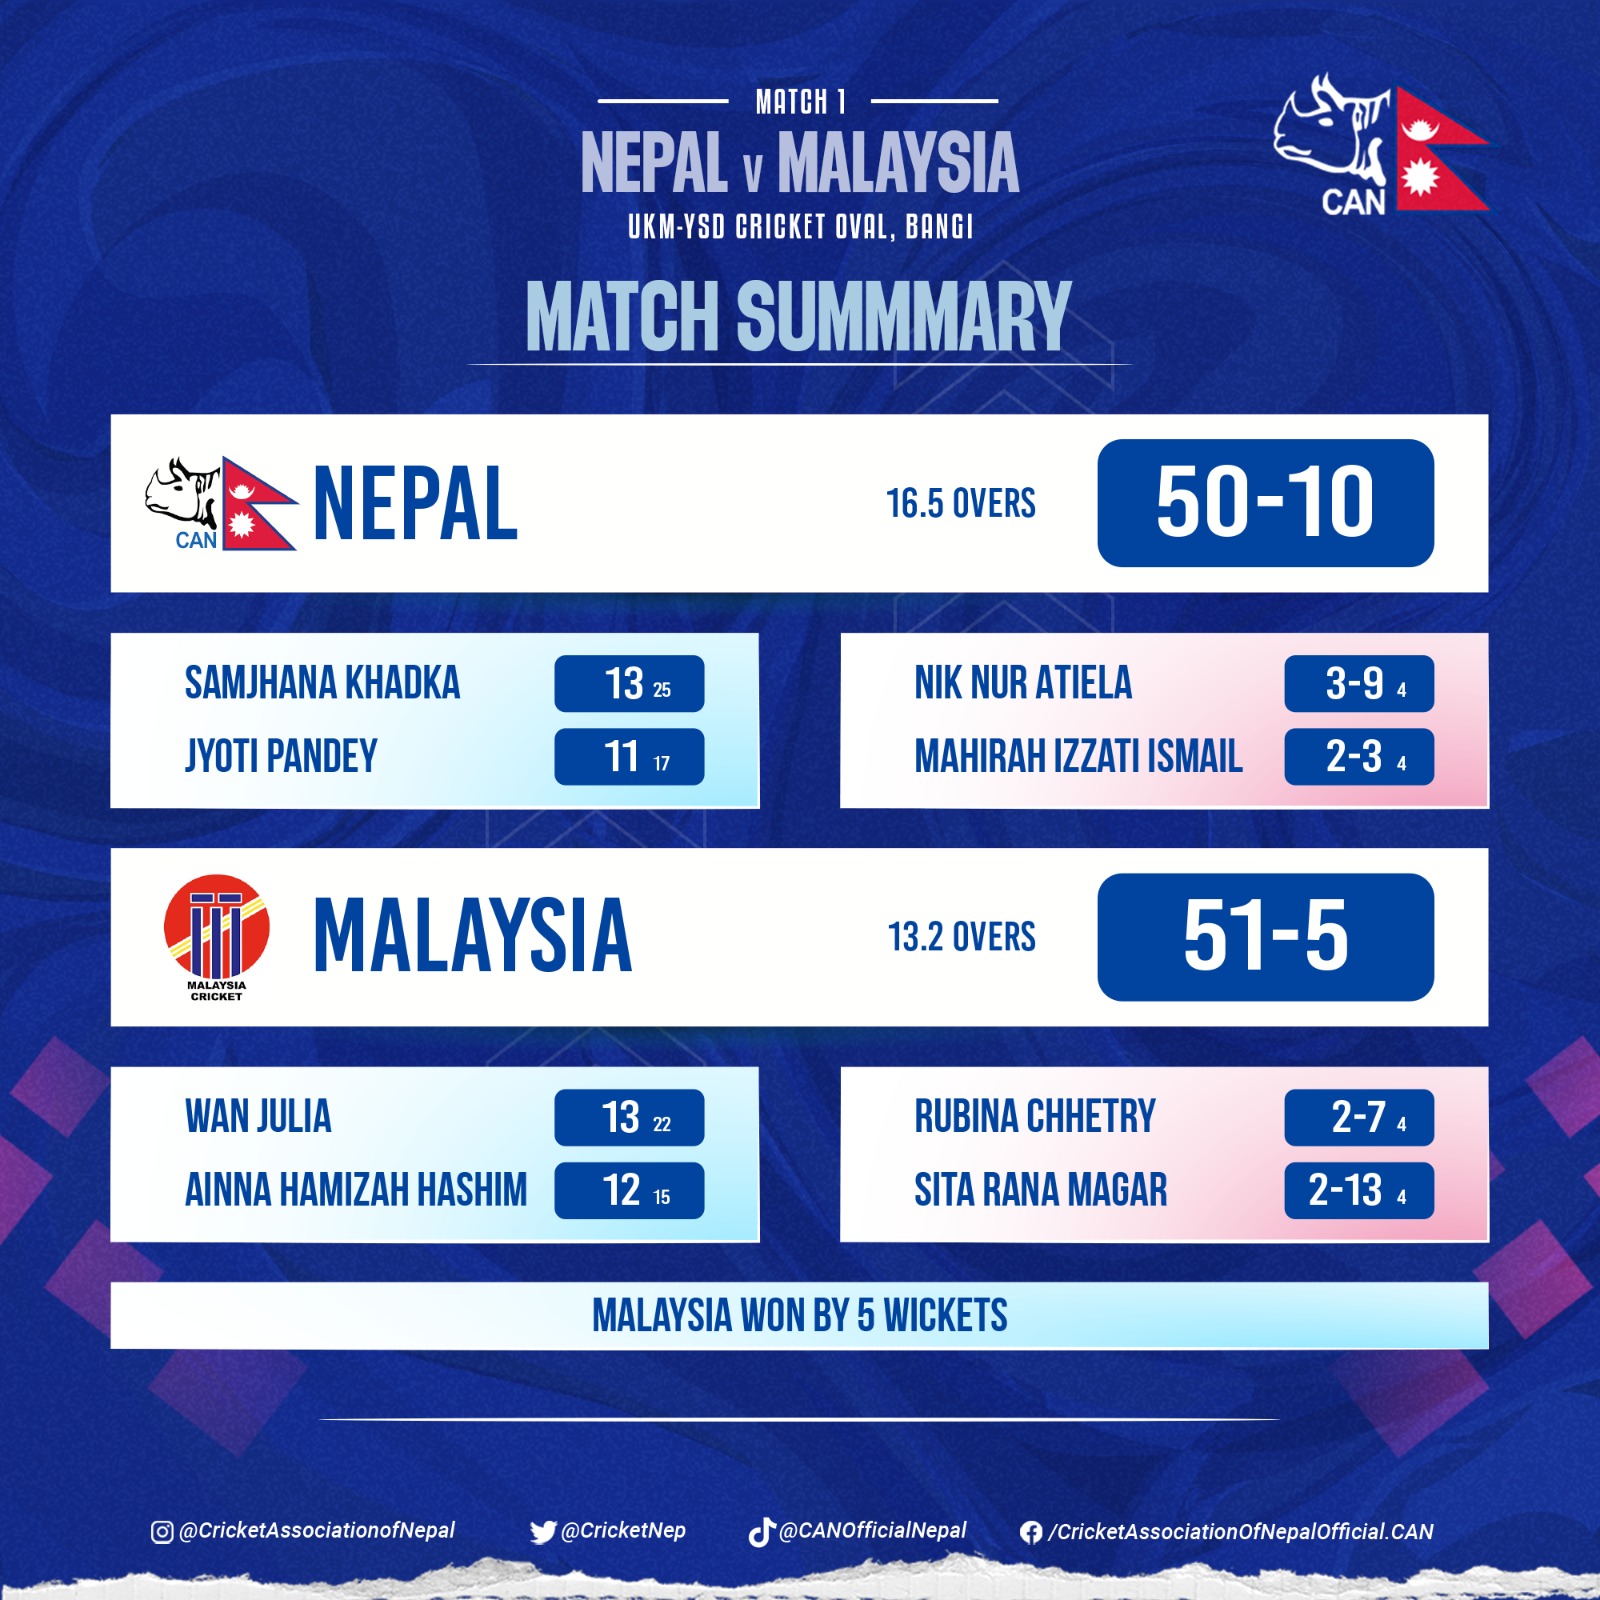 Malaysia beat Nepal by 5 wickets